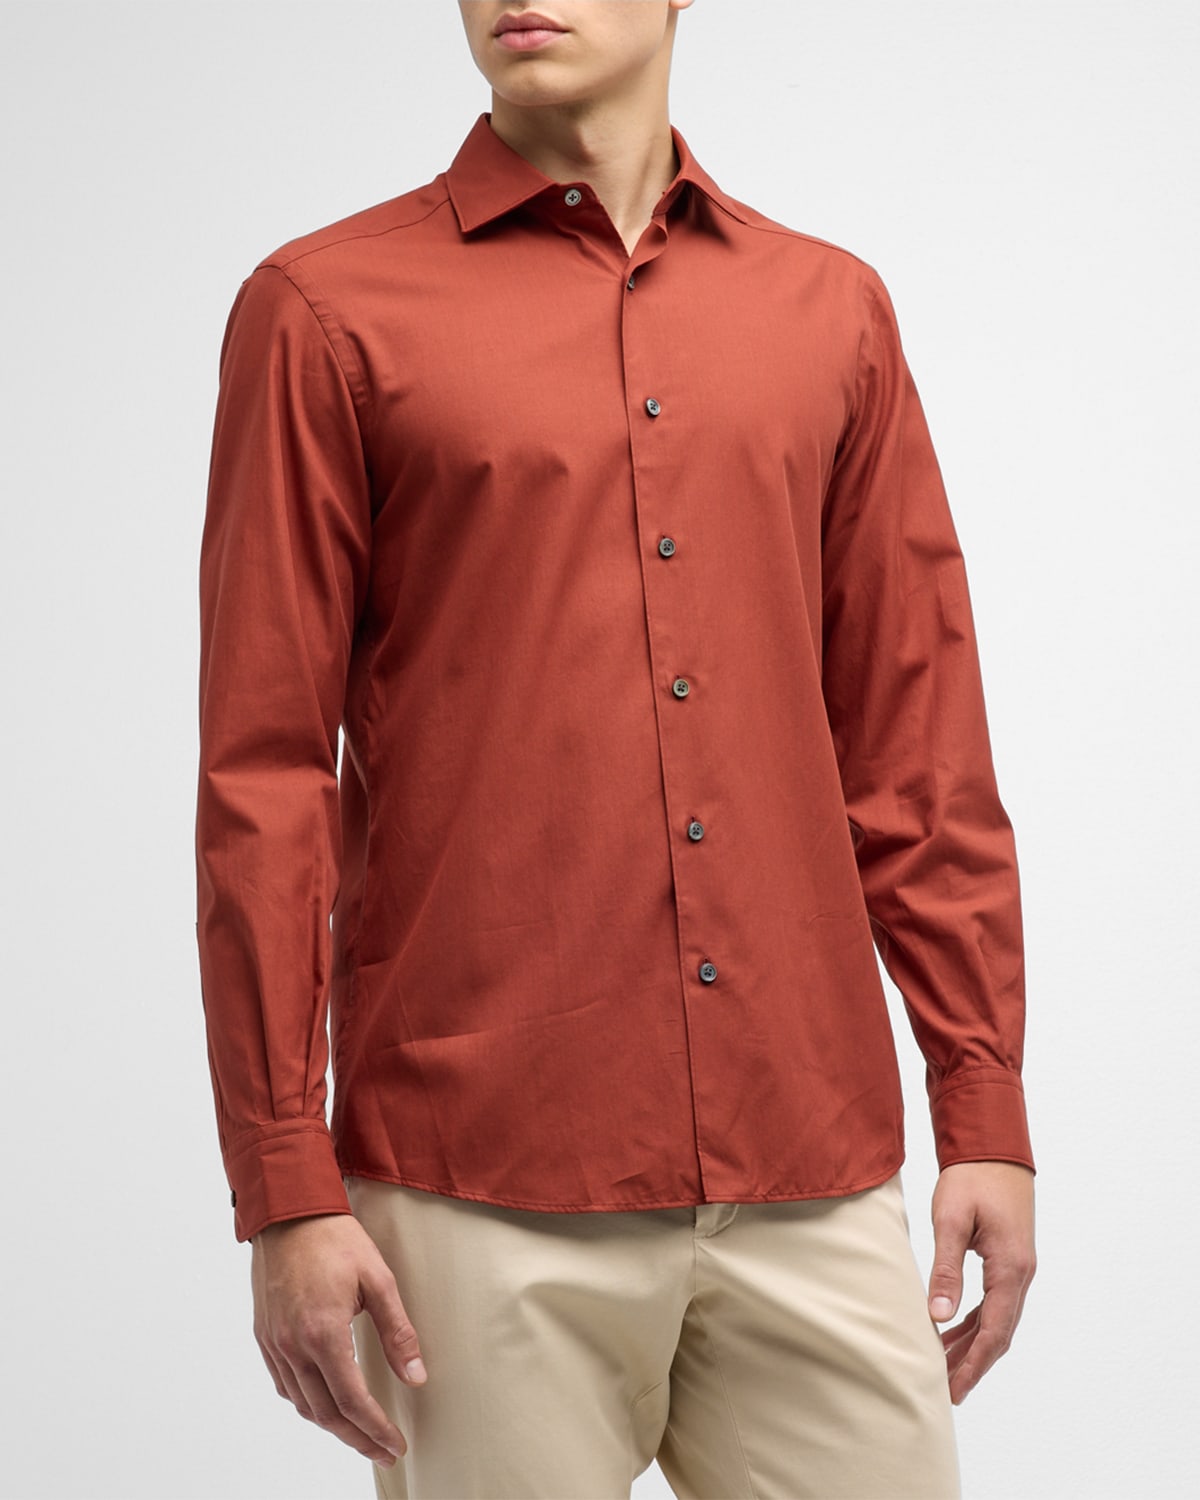 Zegna Men's Premium Cotton Sport Shirt In Dark Orange Solid